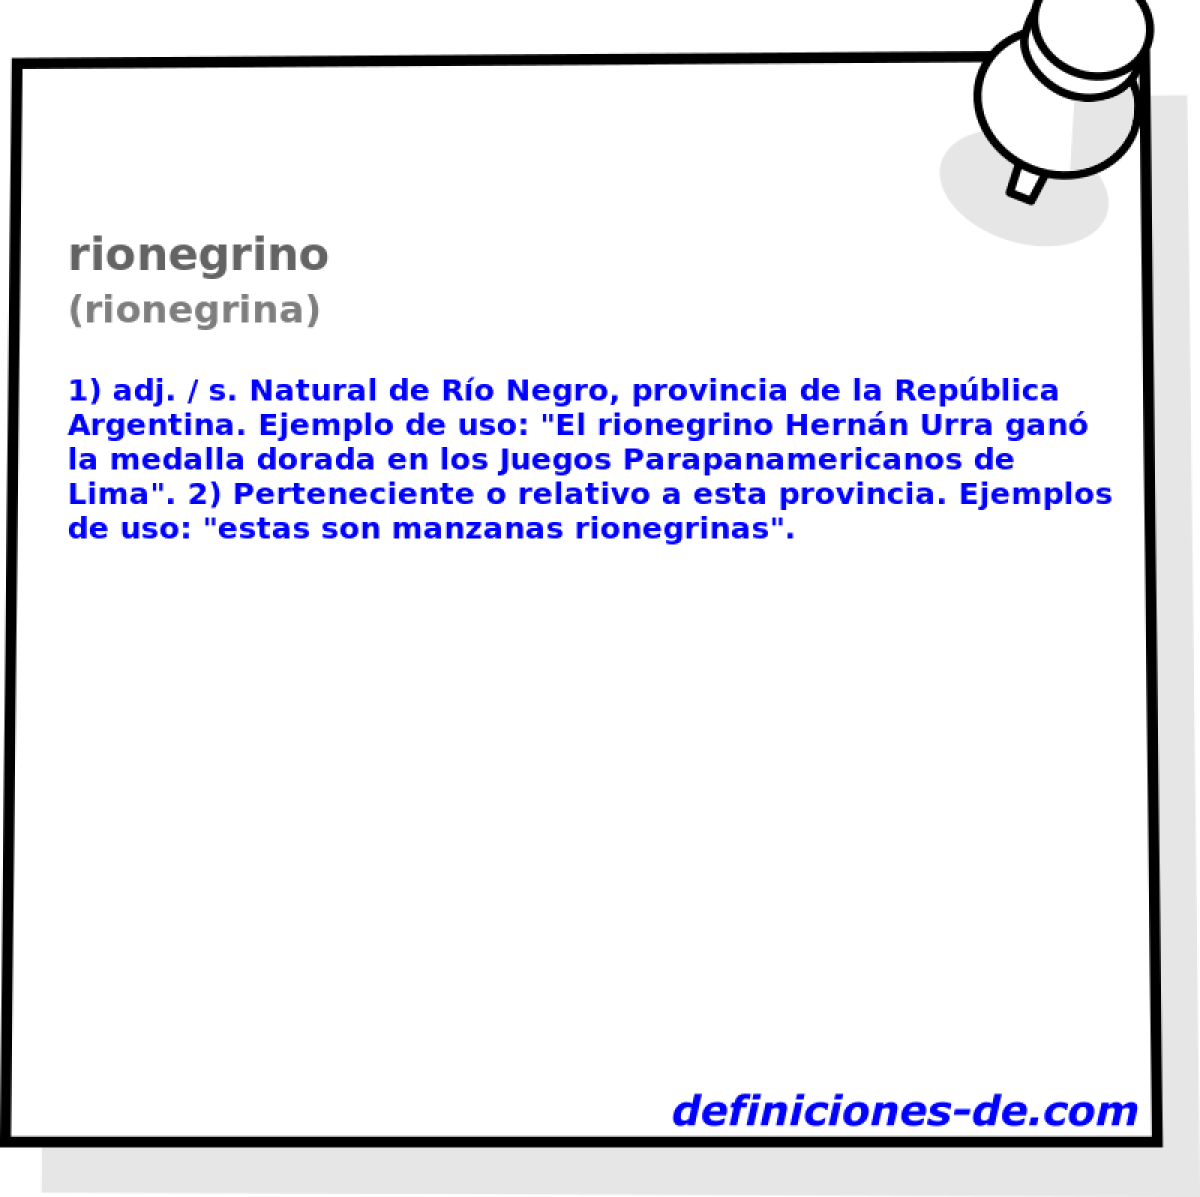 rionegrino (rionegrina)